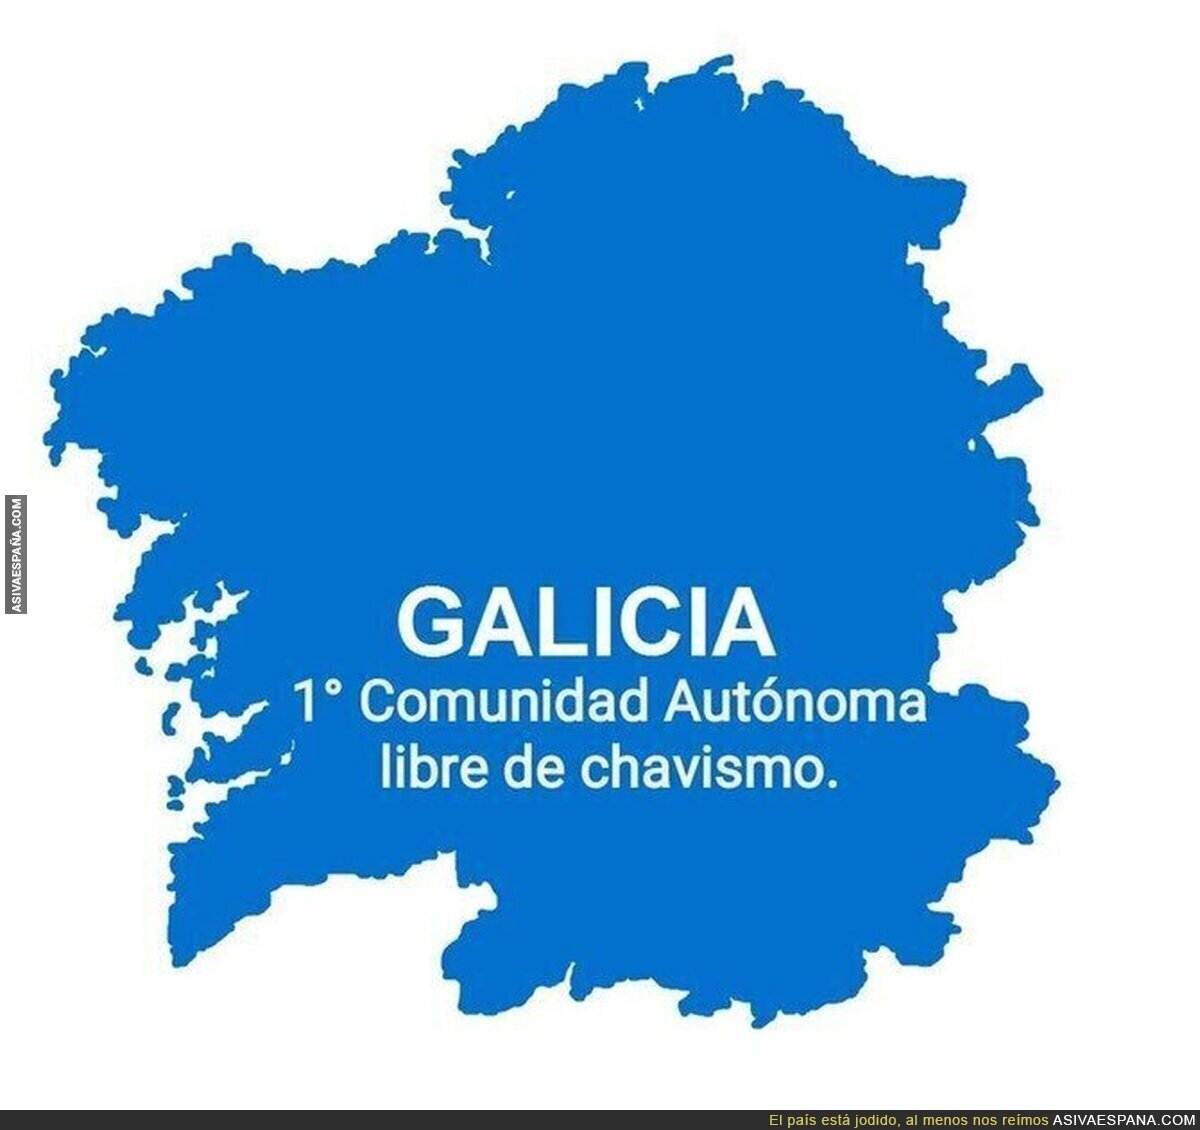 Galicia se libra de Podemos